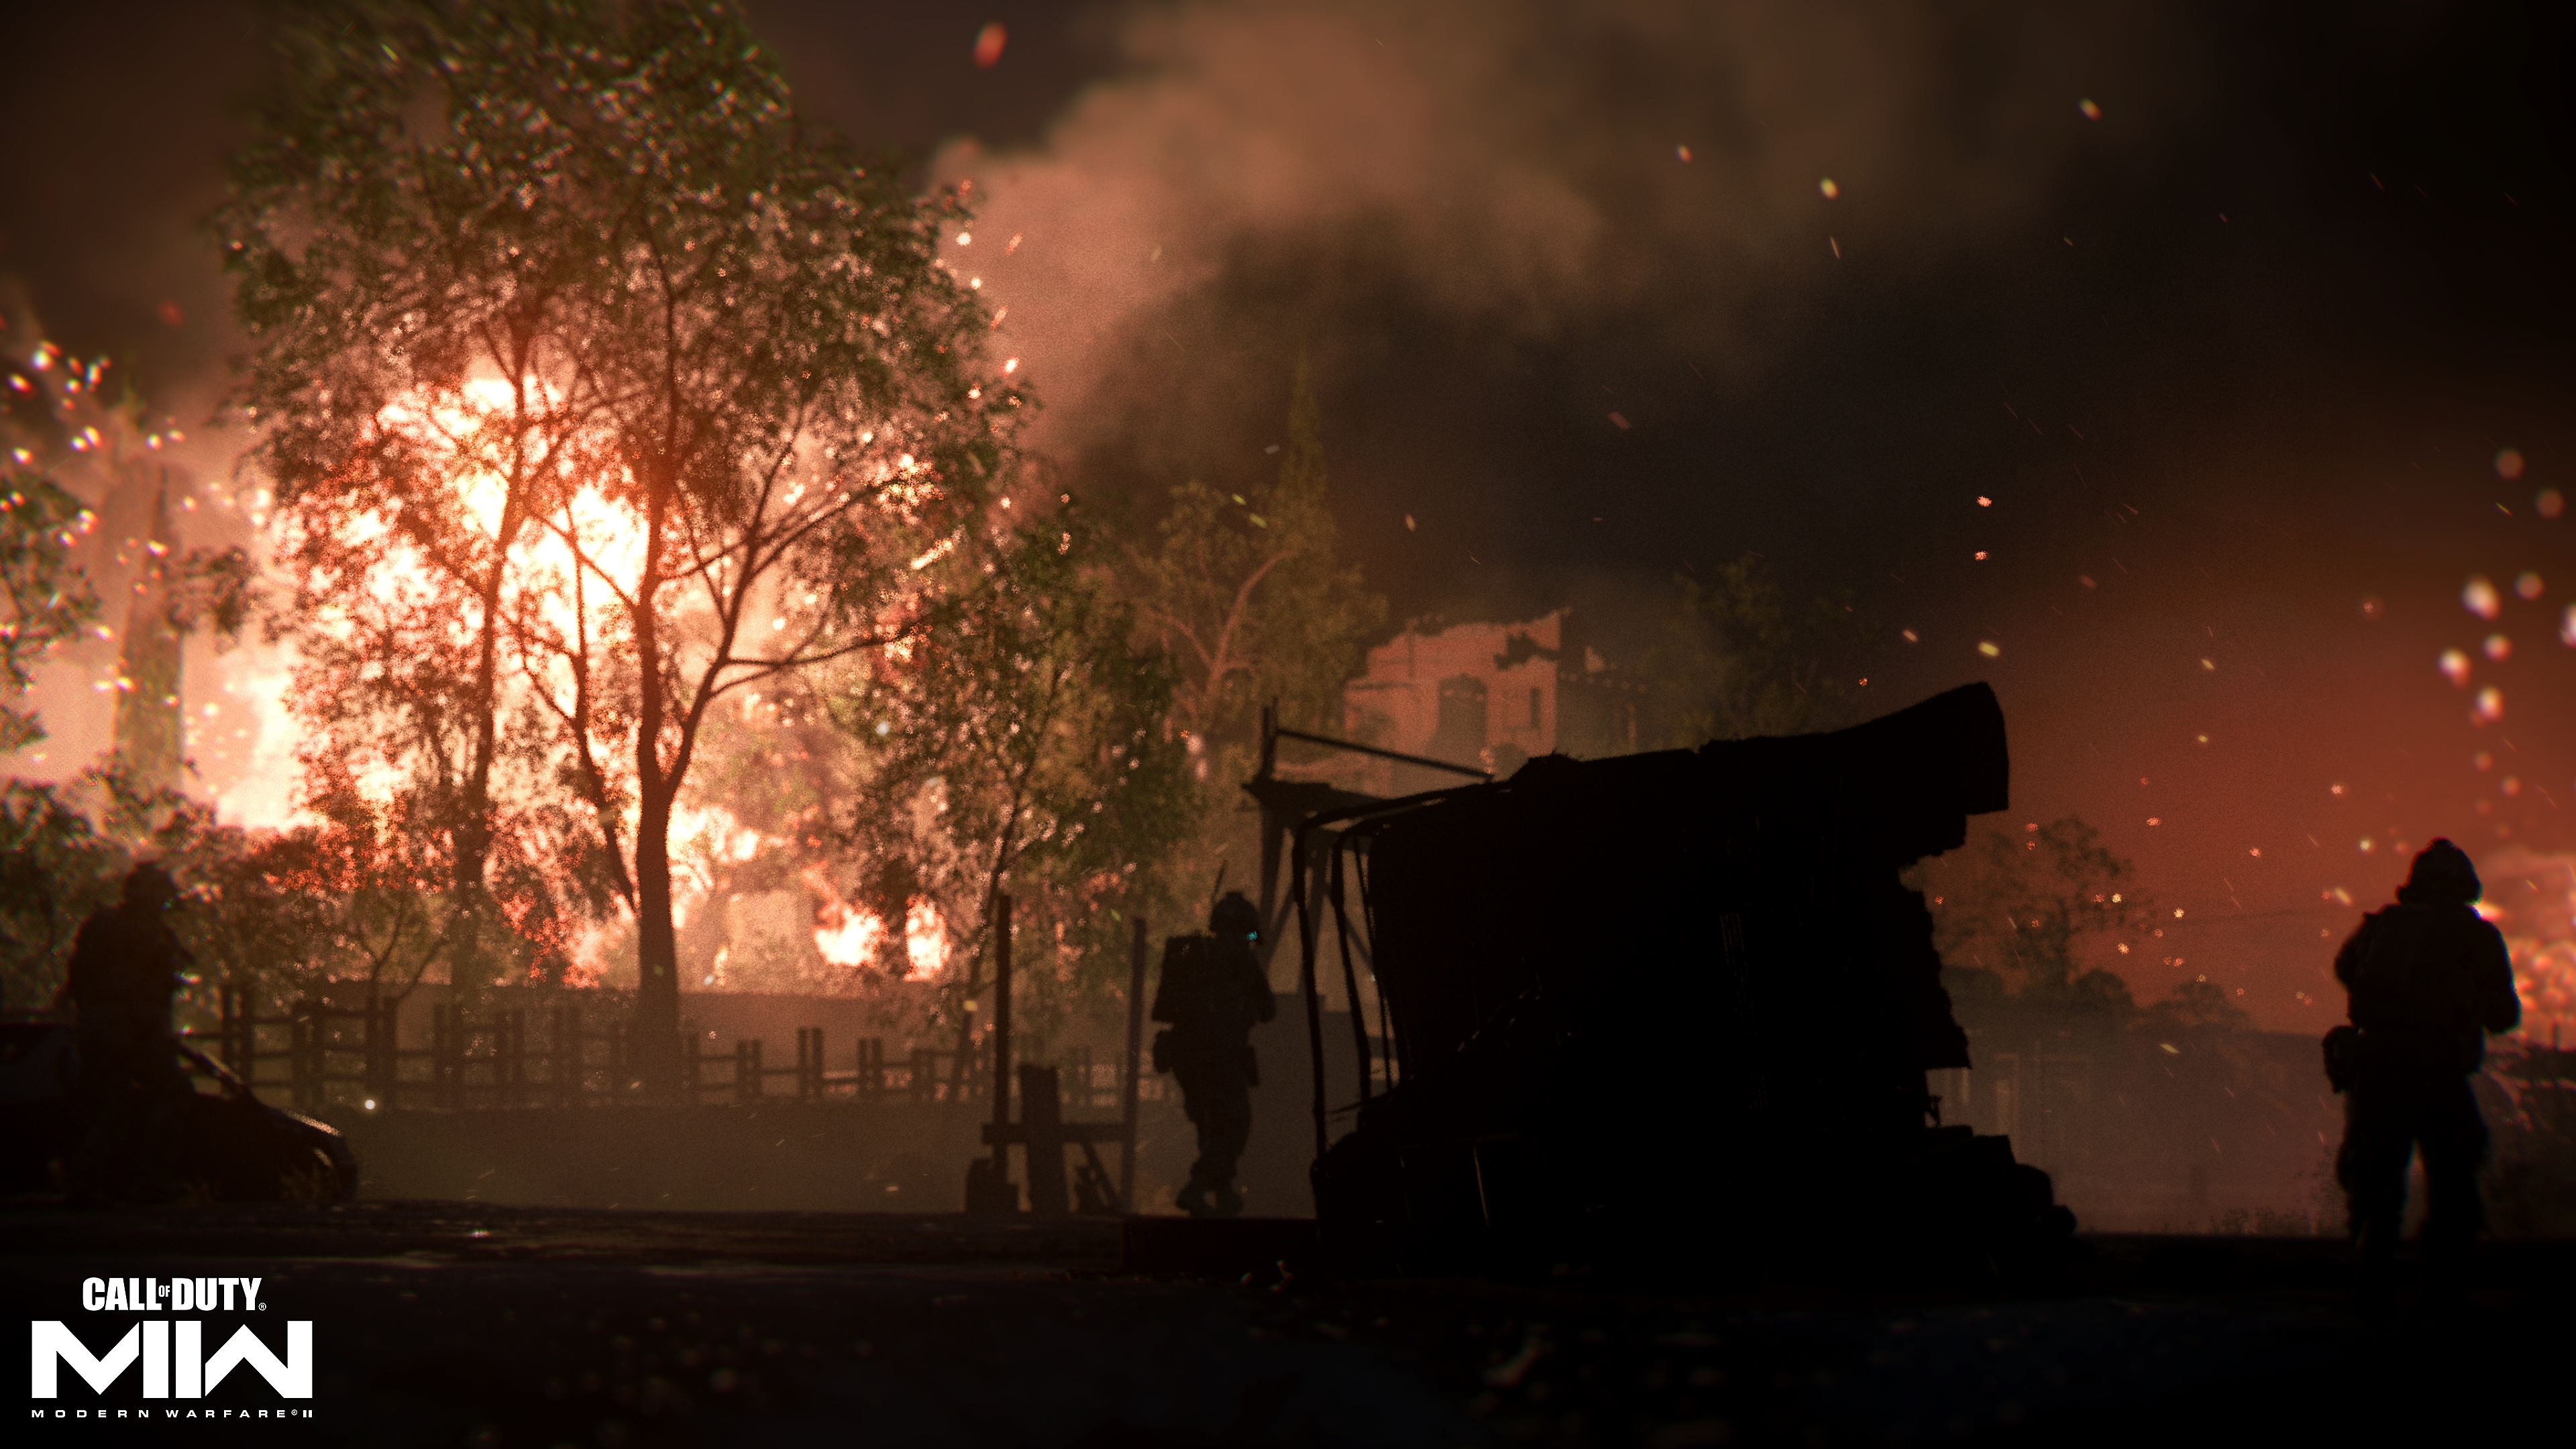 Call of Duty: Modern Warfare 2 2022 екранна снимка, показваща огън в далечината зад дърво